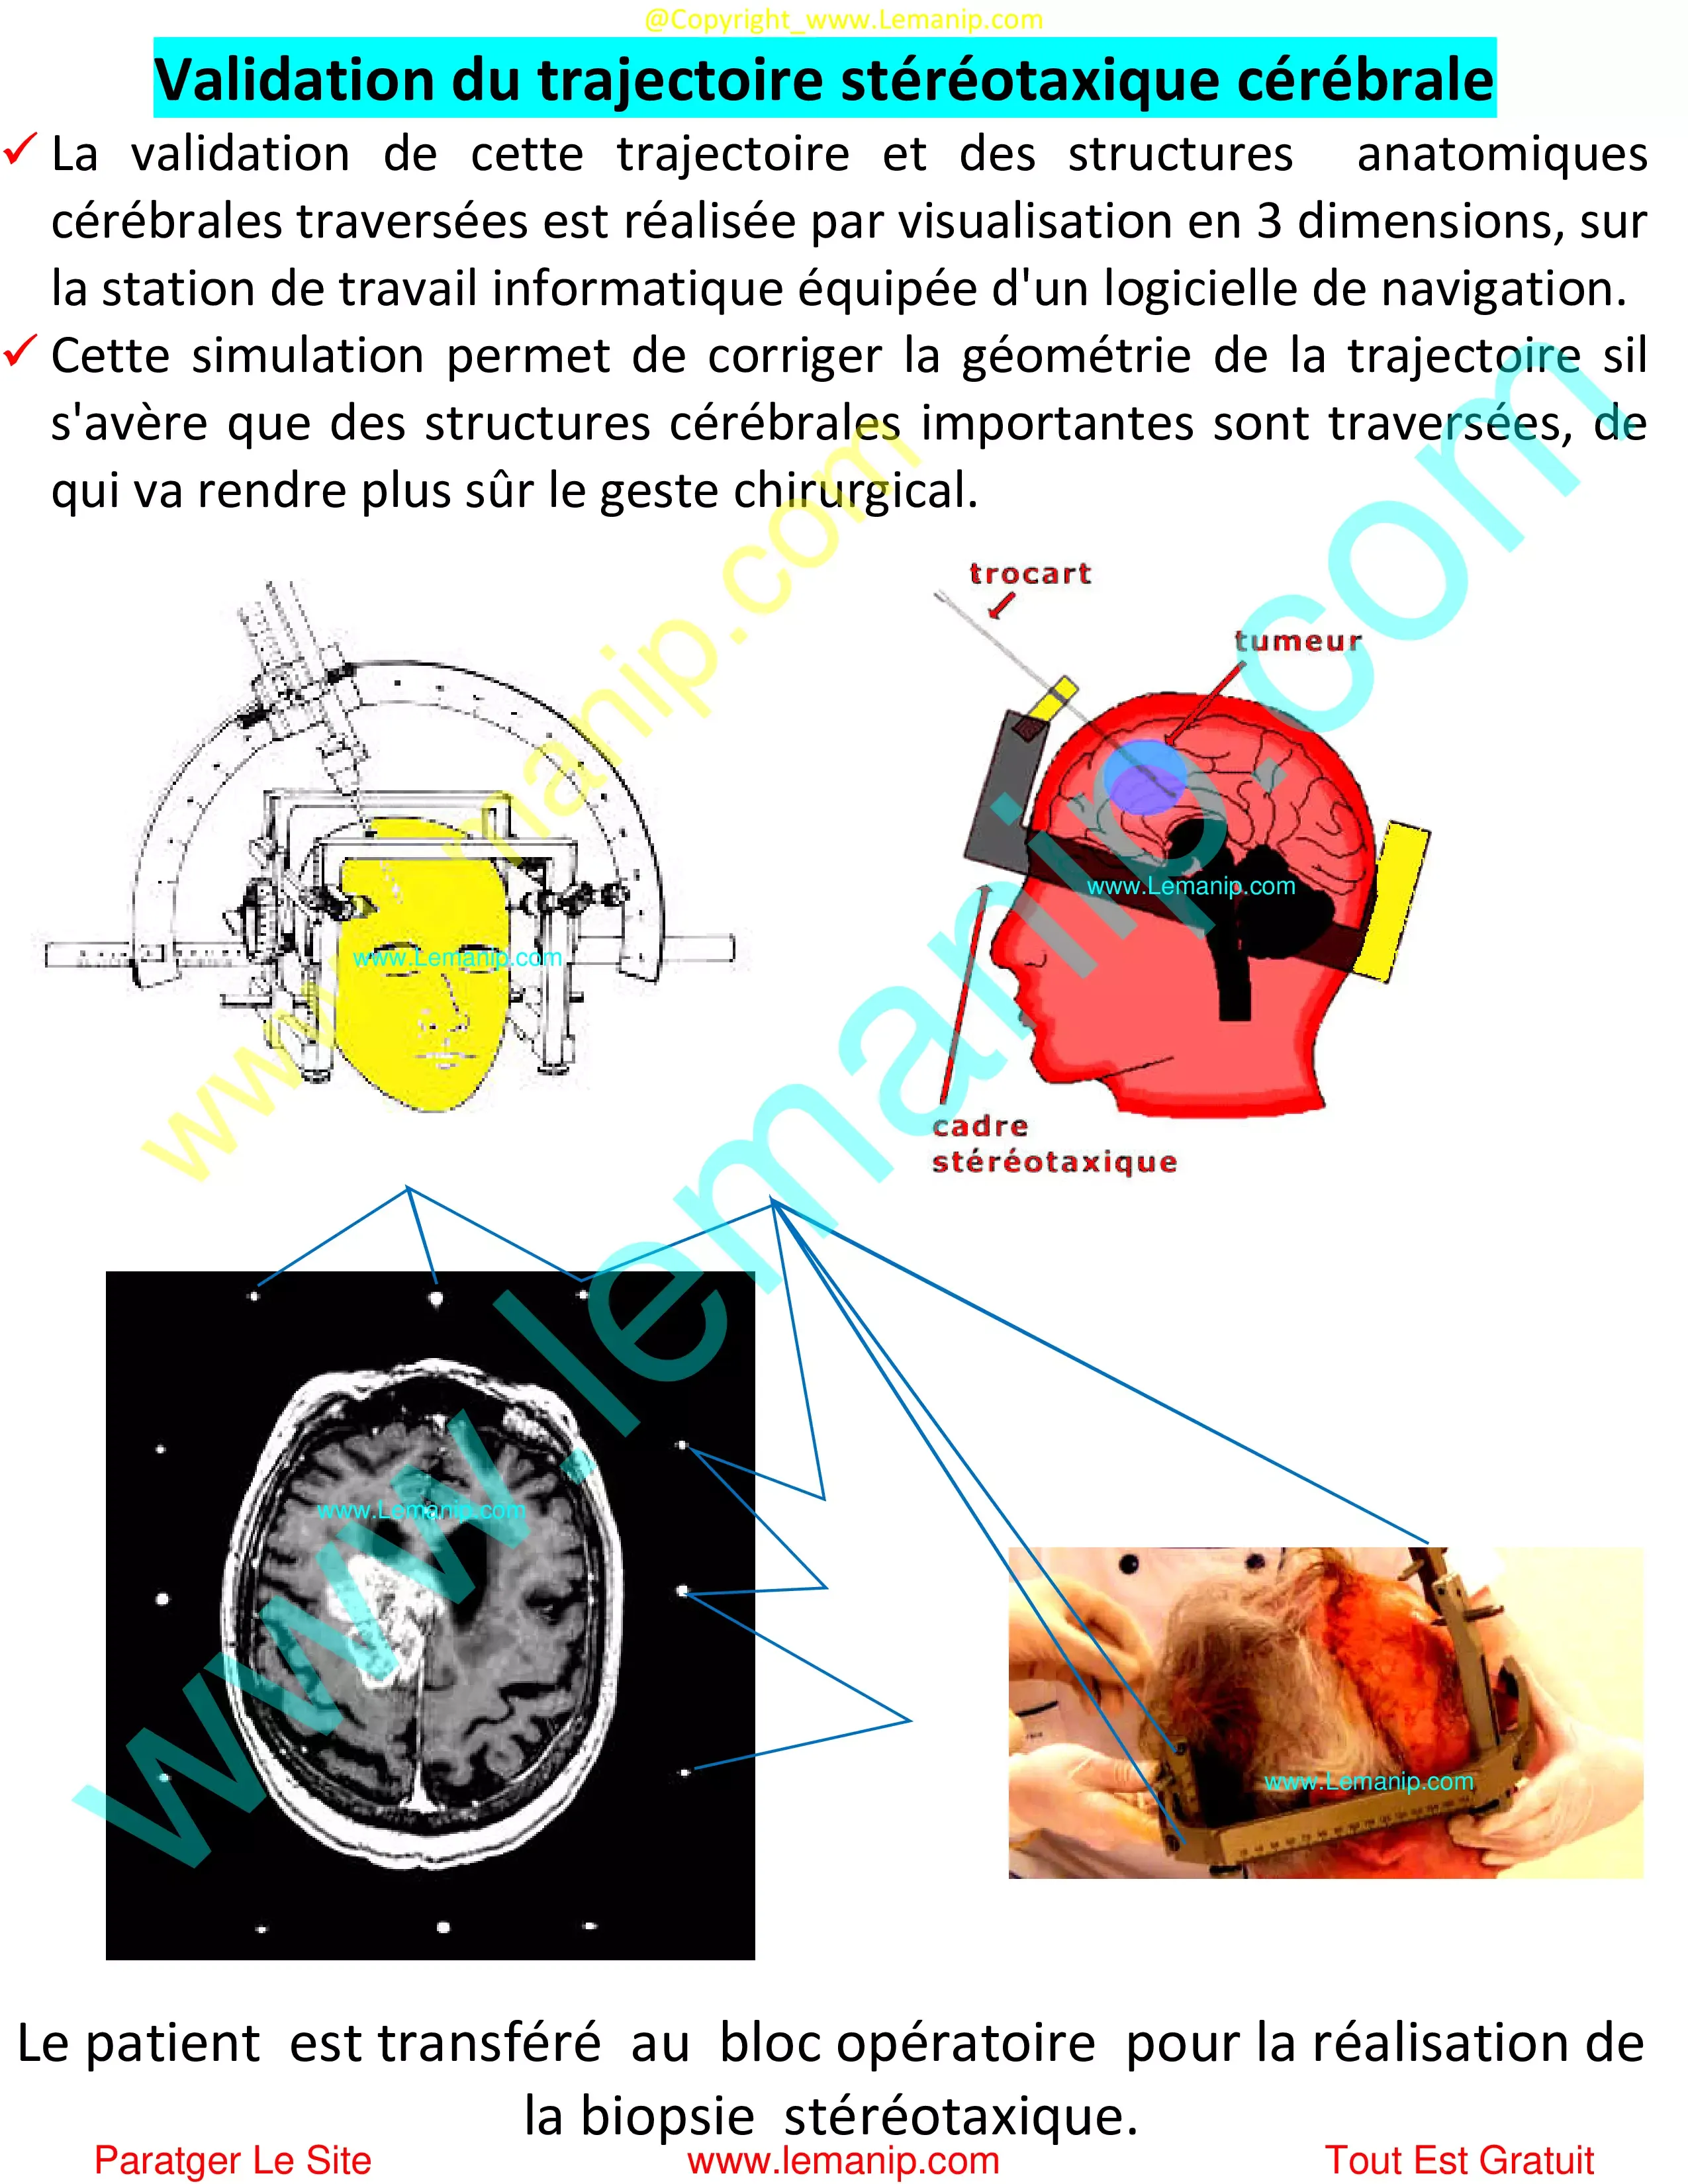 Validation trajectoire stéréotaxique cérébrale